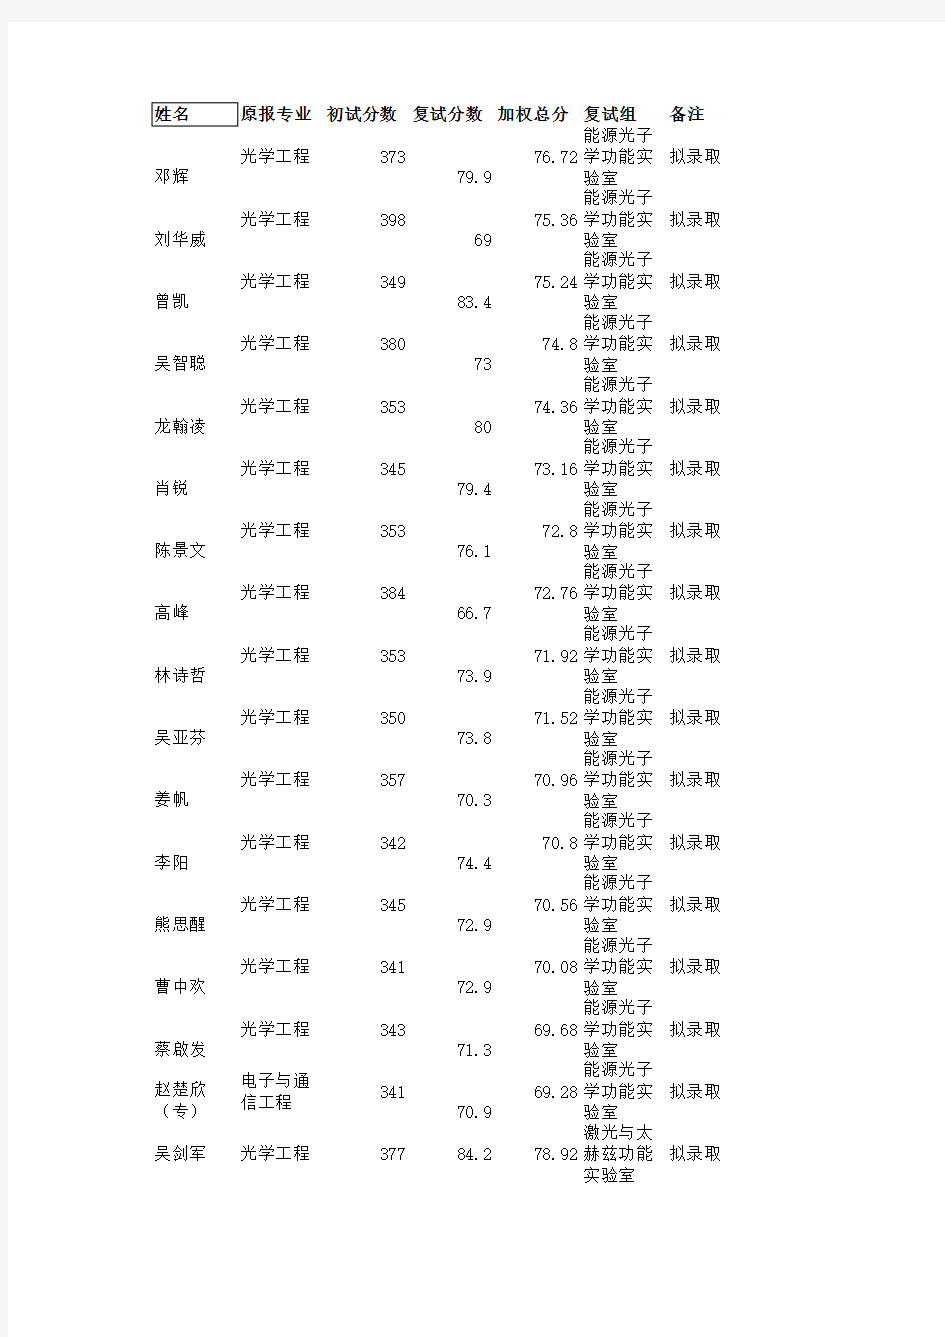 华中科技大学武汉光电国家实验室 硕士第一志愿考生拟录取名单公示